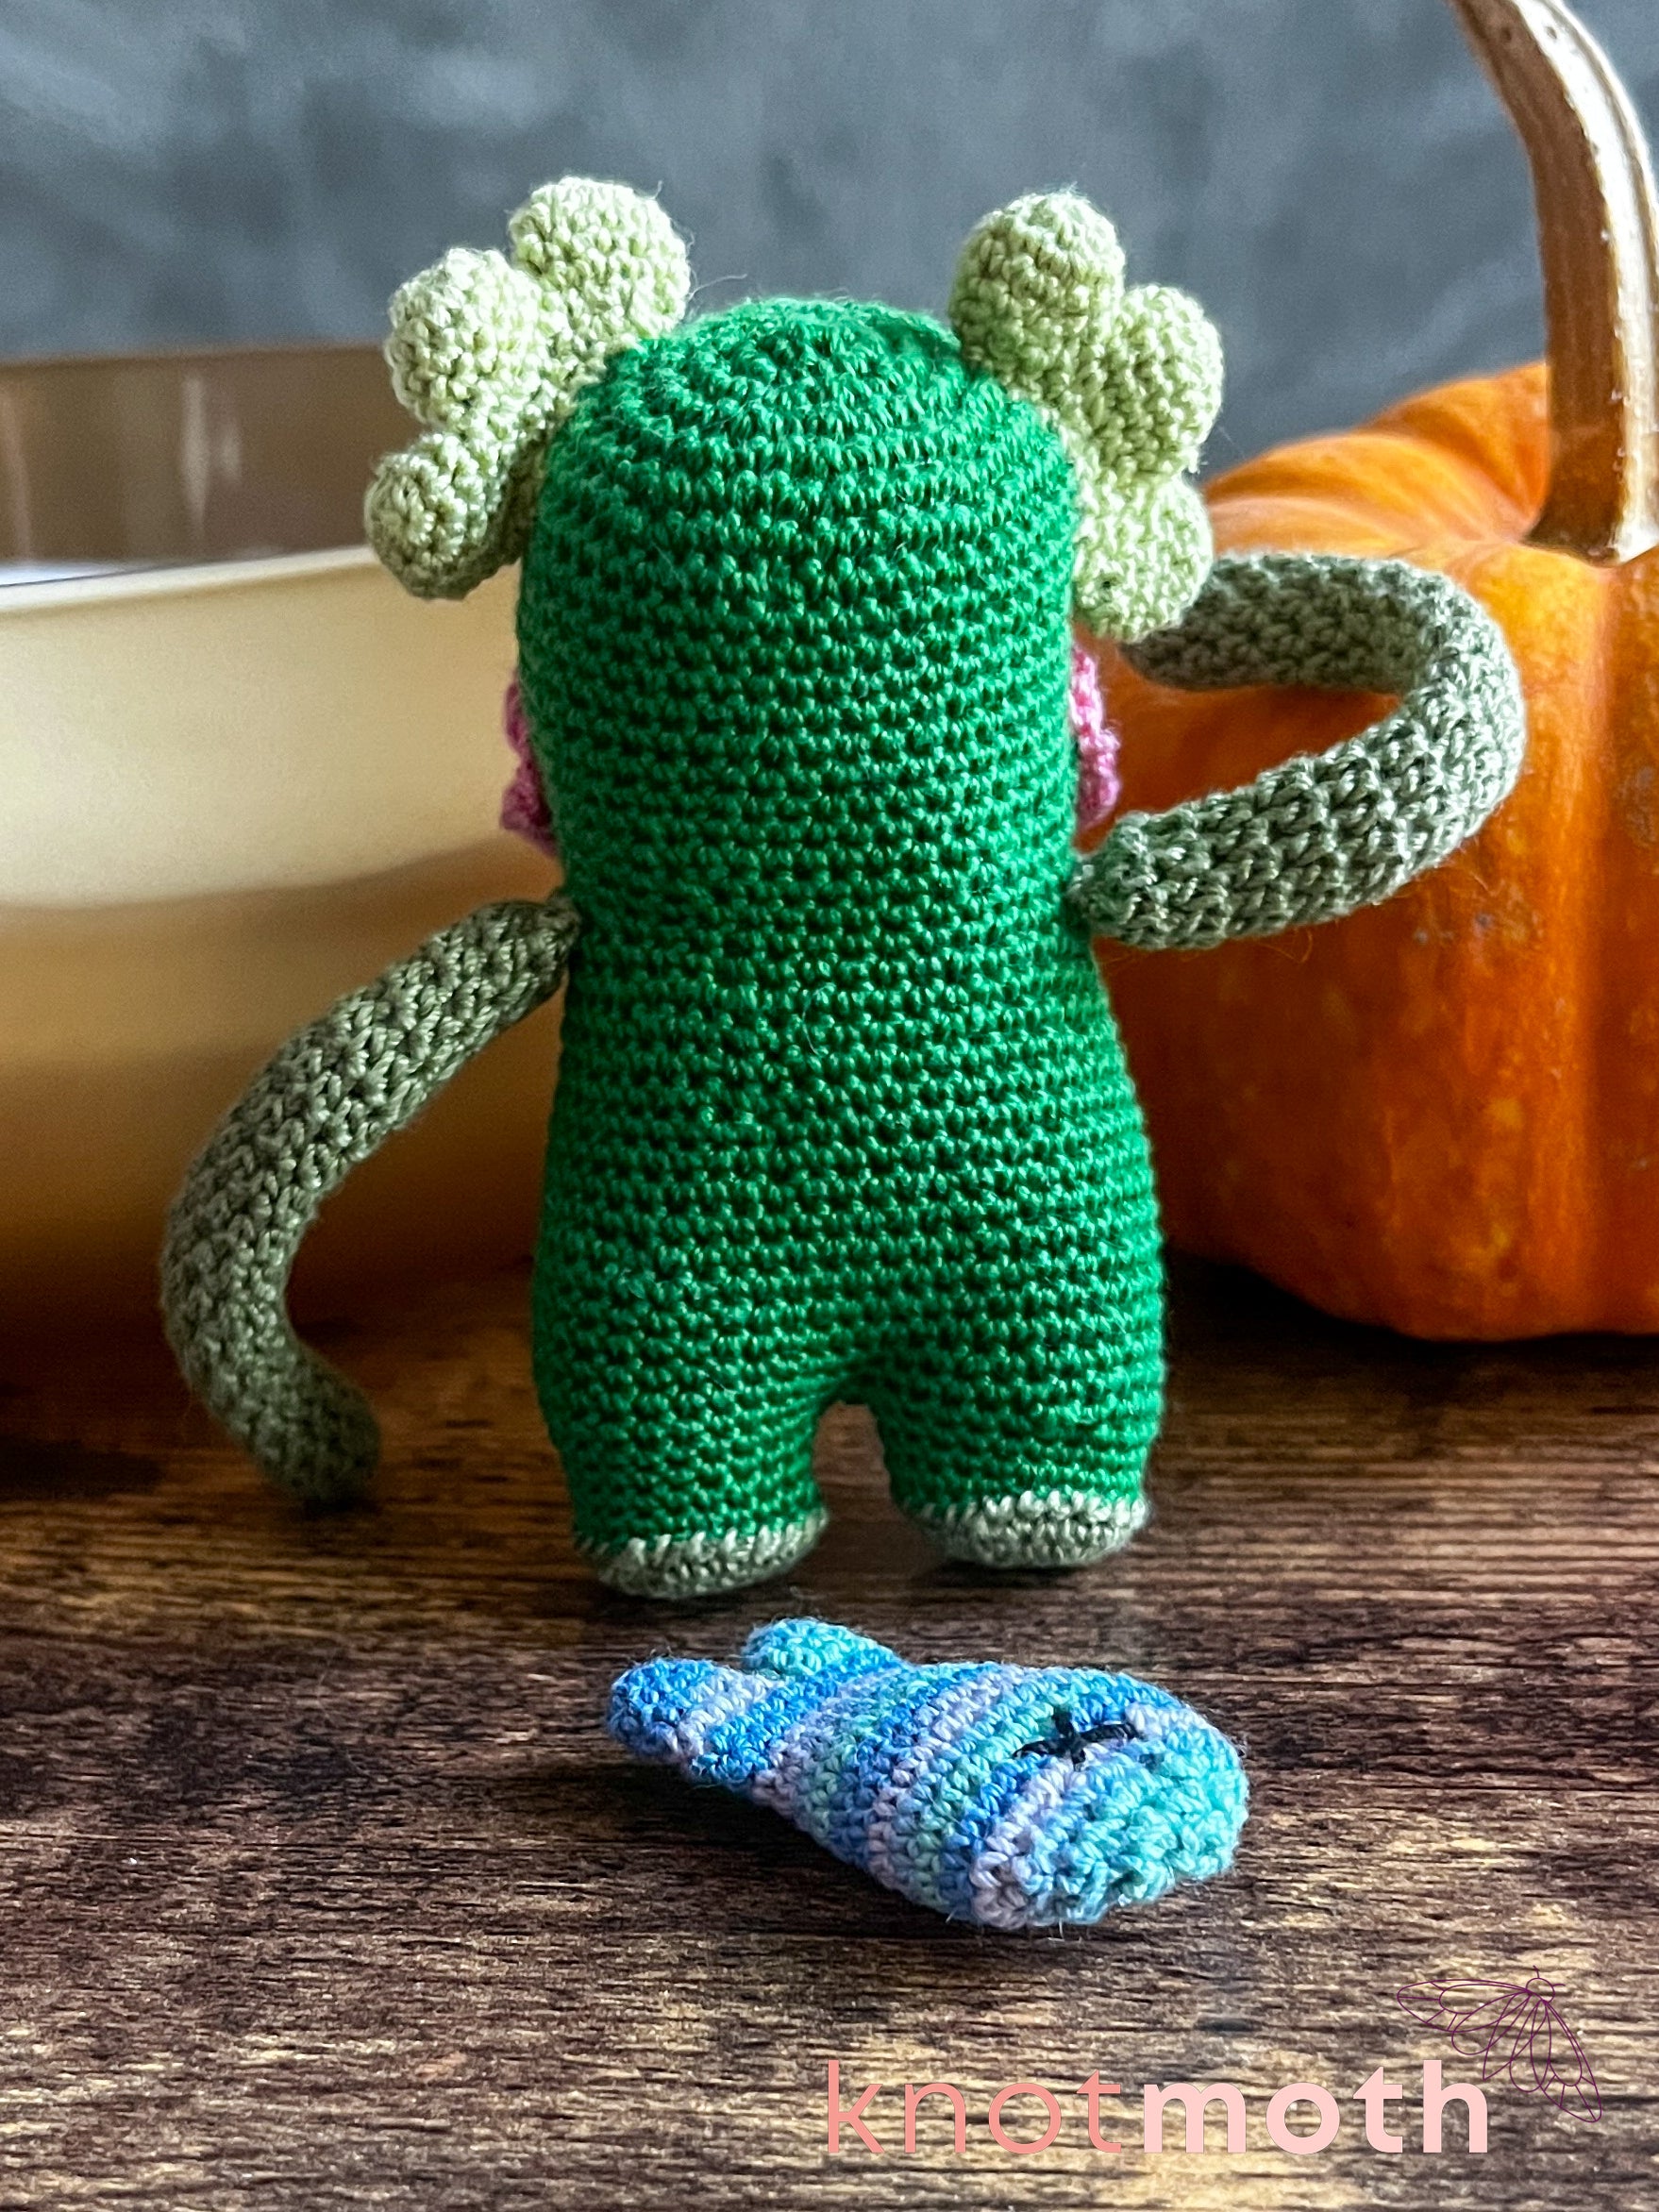 Mum wanted a little desk buddy : r/crochet